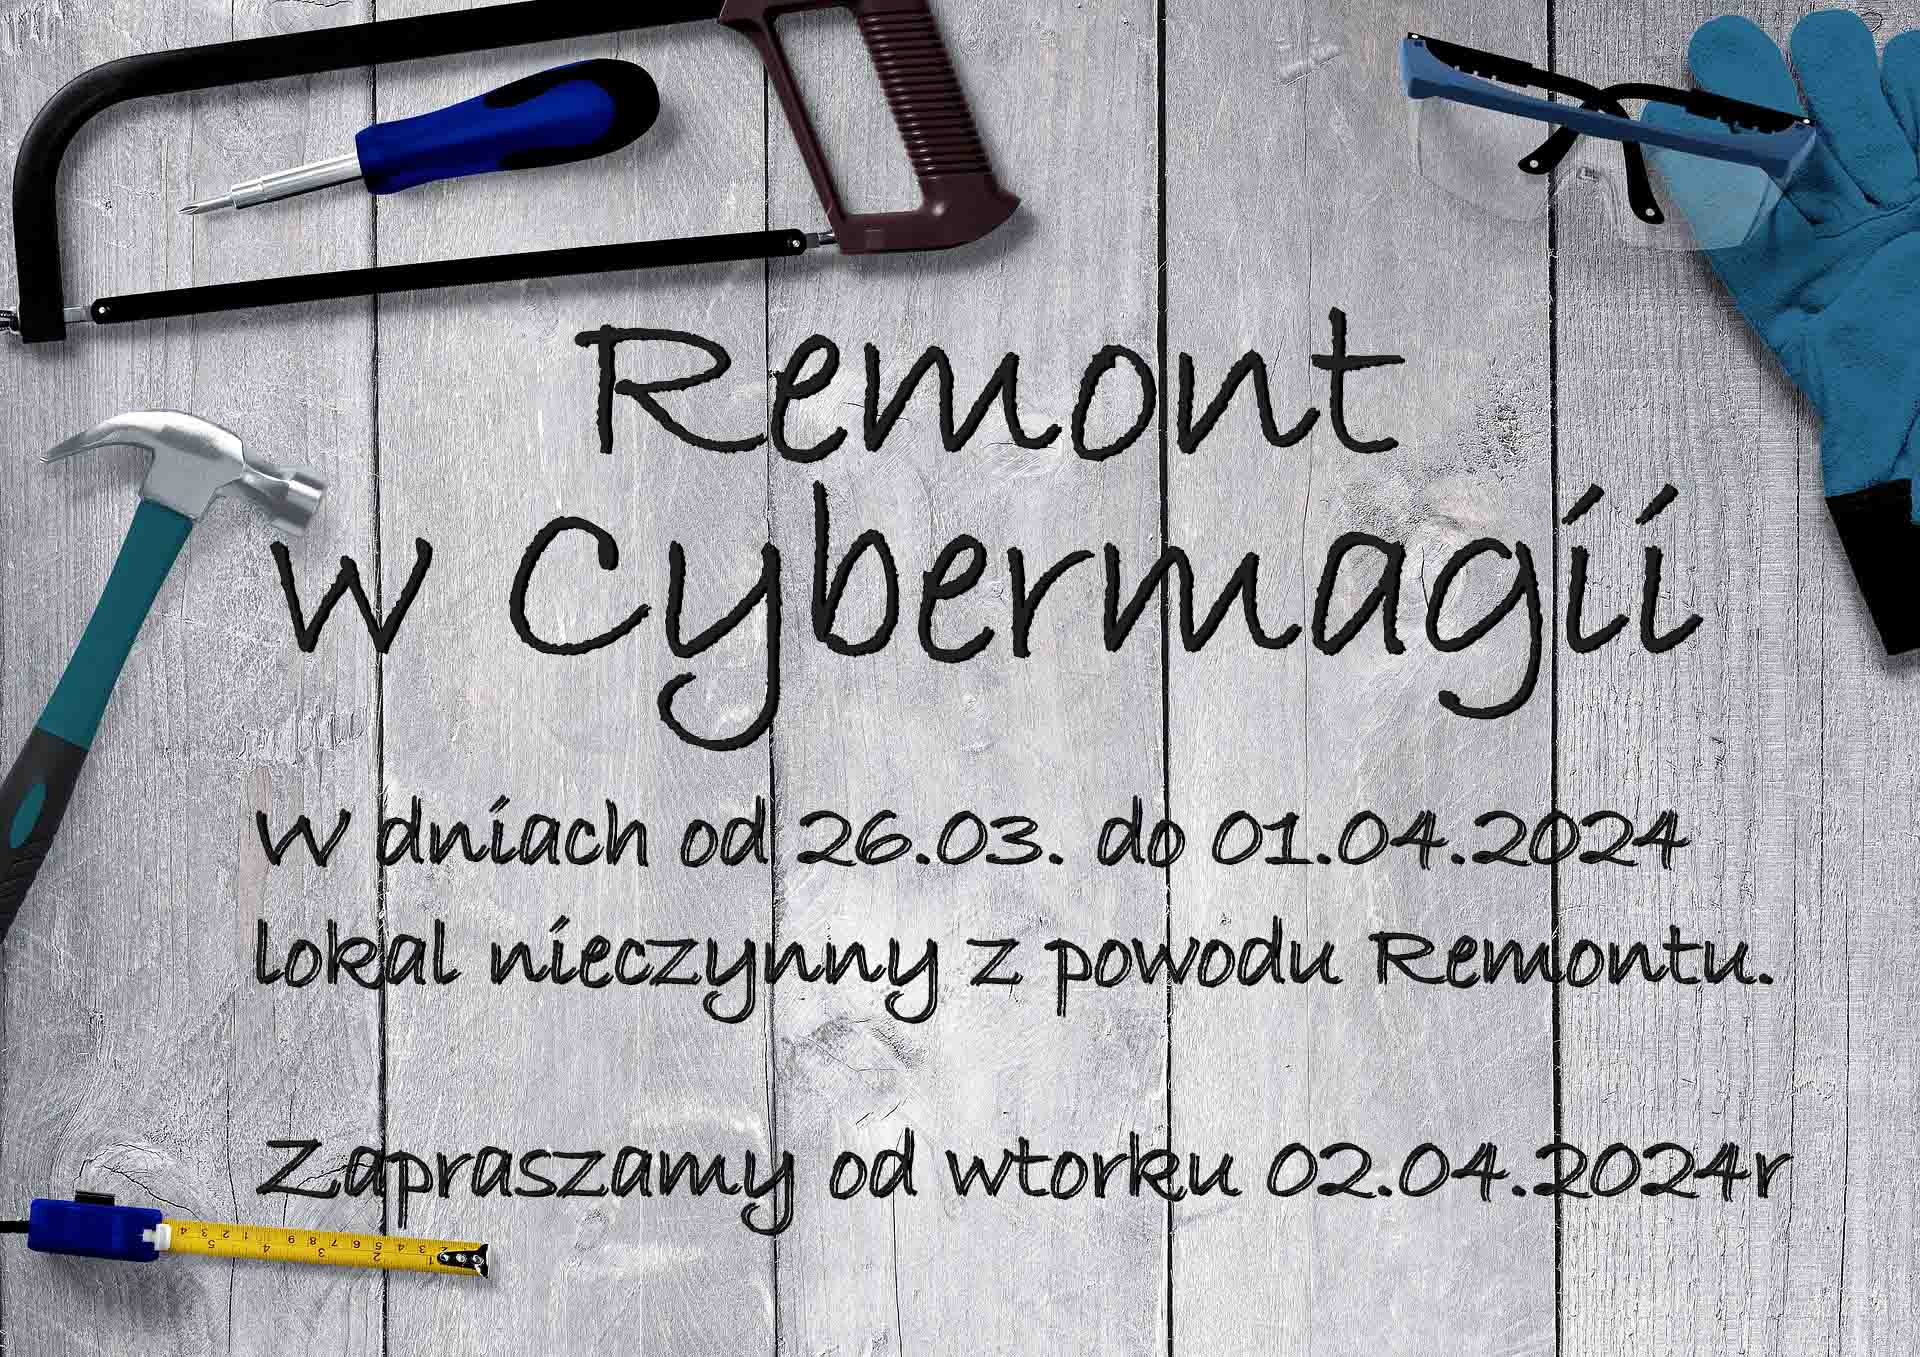 Remont w Cybermagii